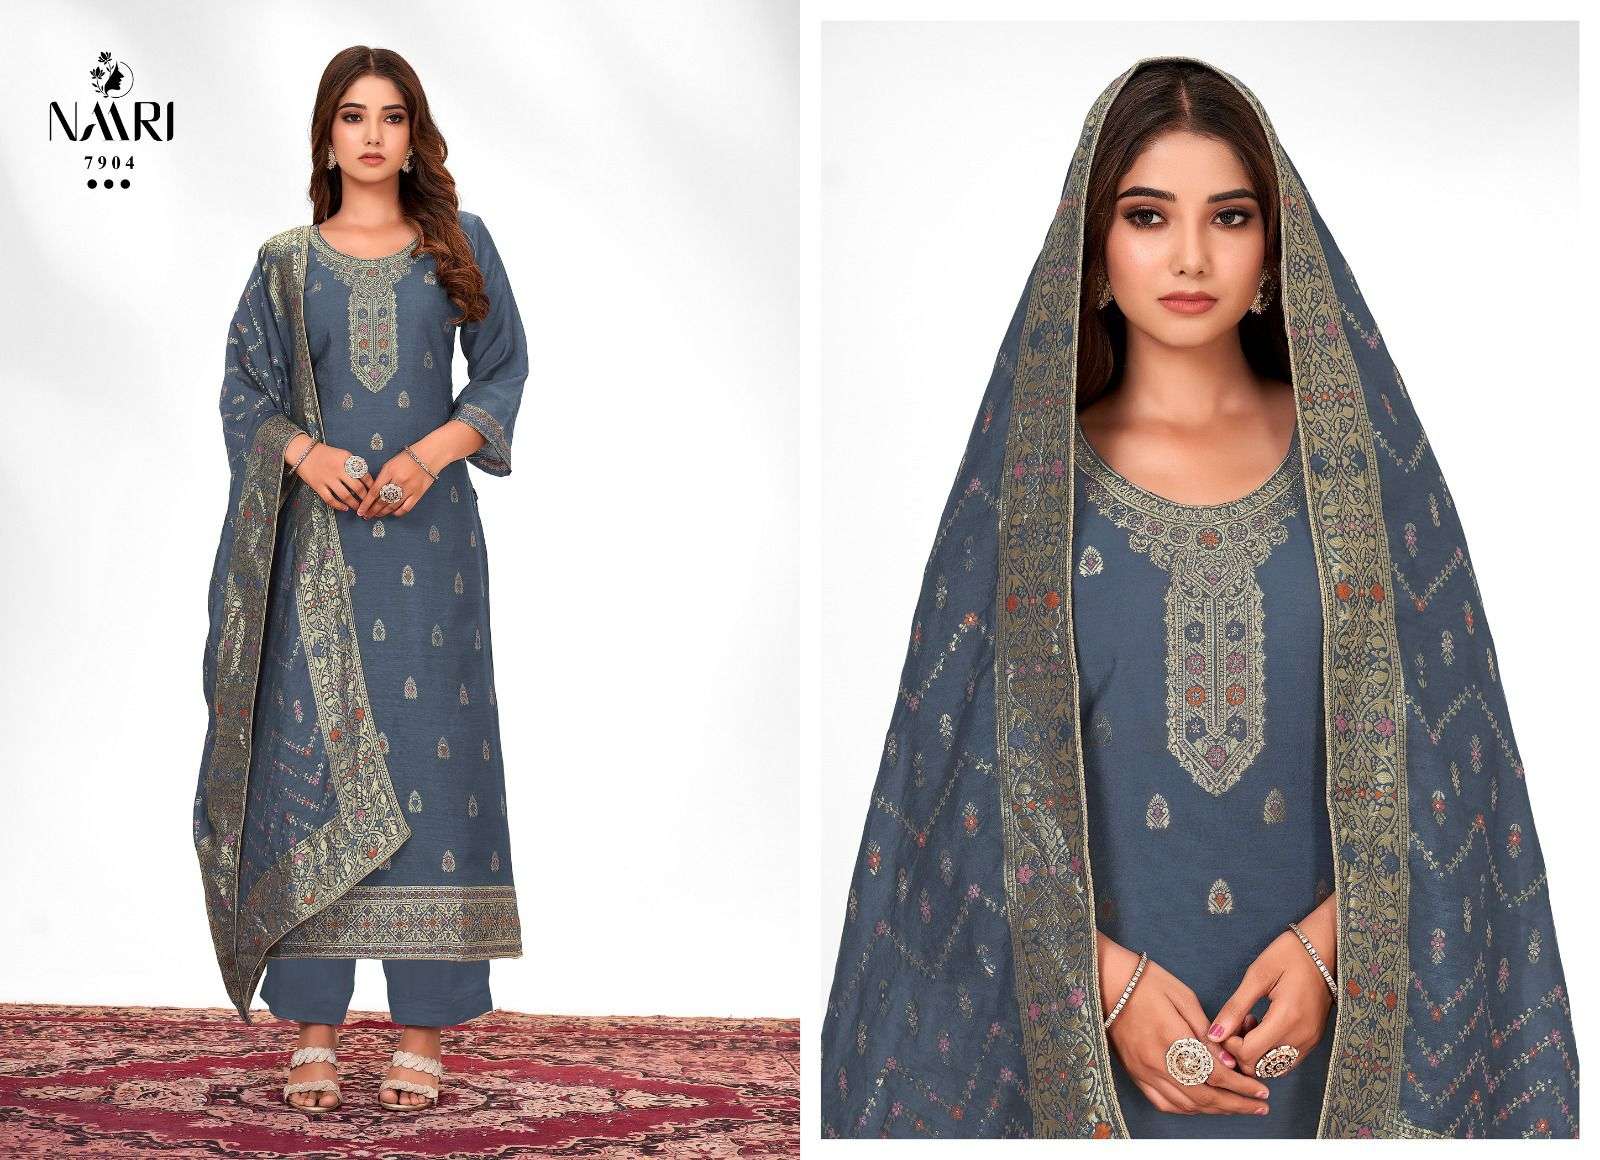 naari zilmil 7901-7904 series stylish designer salwar kameez catalogue collection 2023